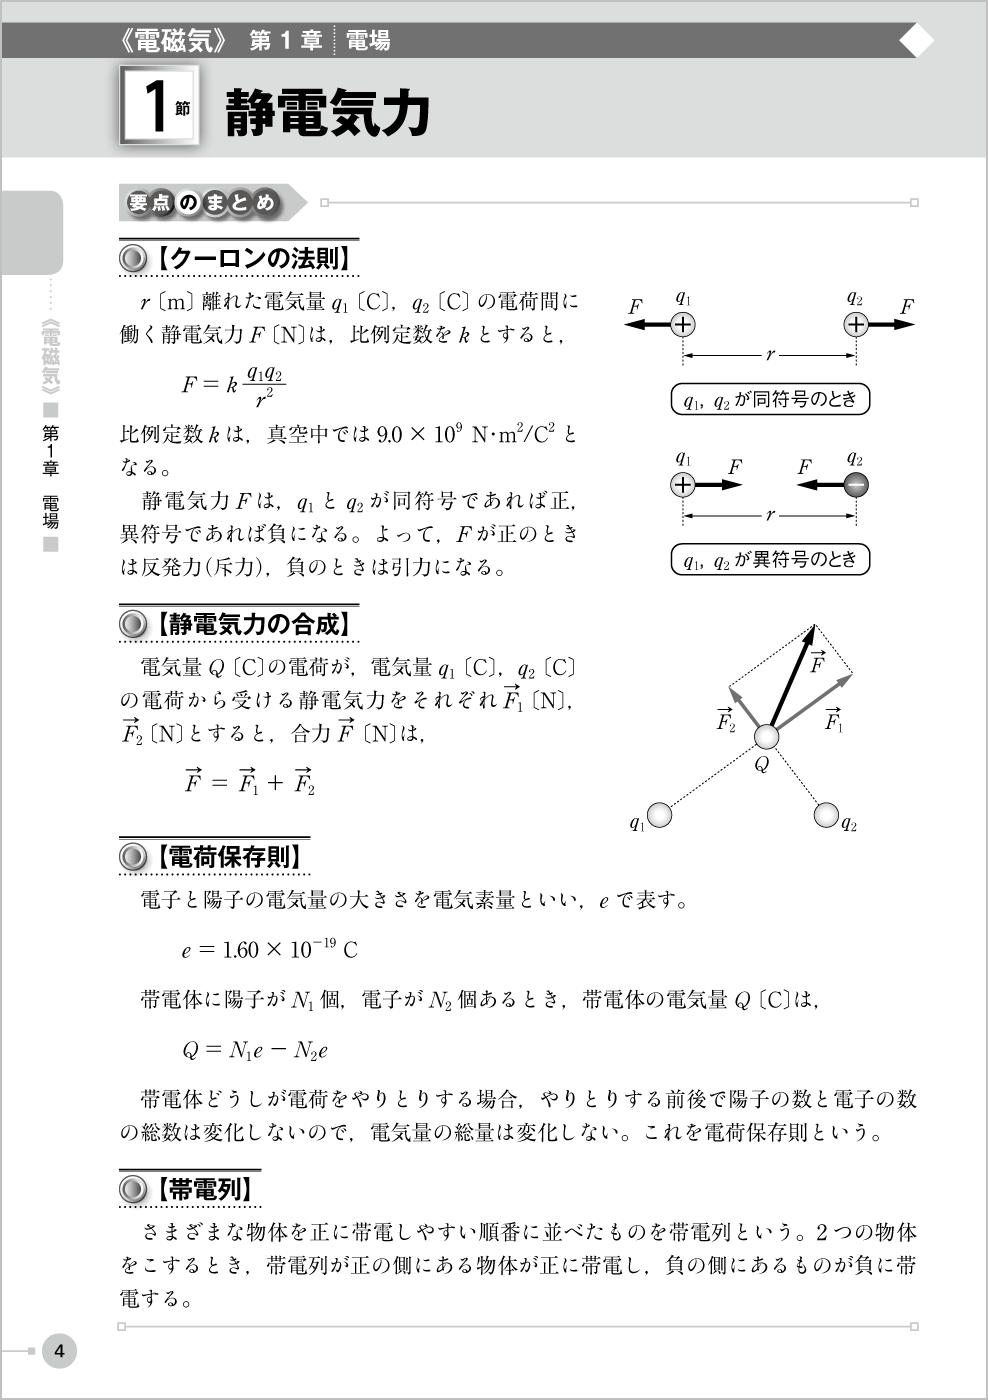 電磁気・原子問題集 p.4